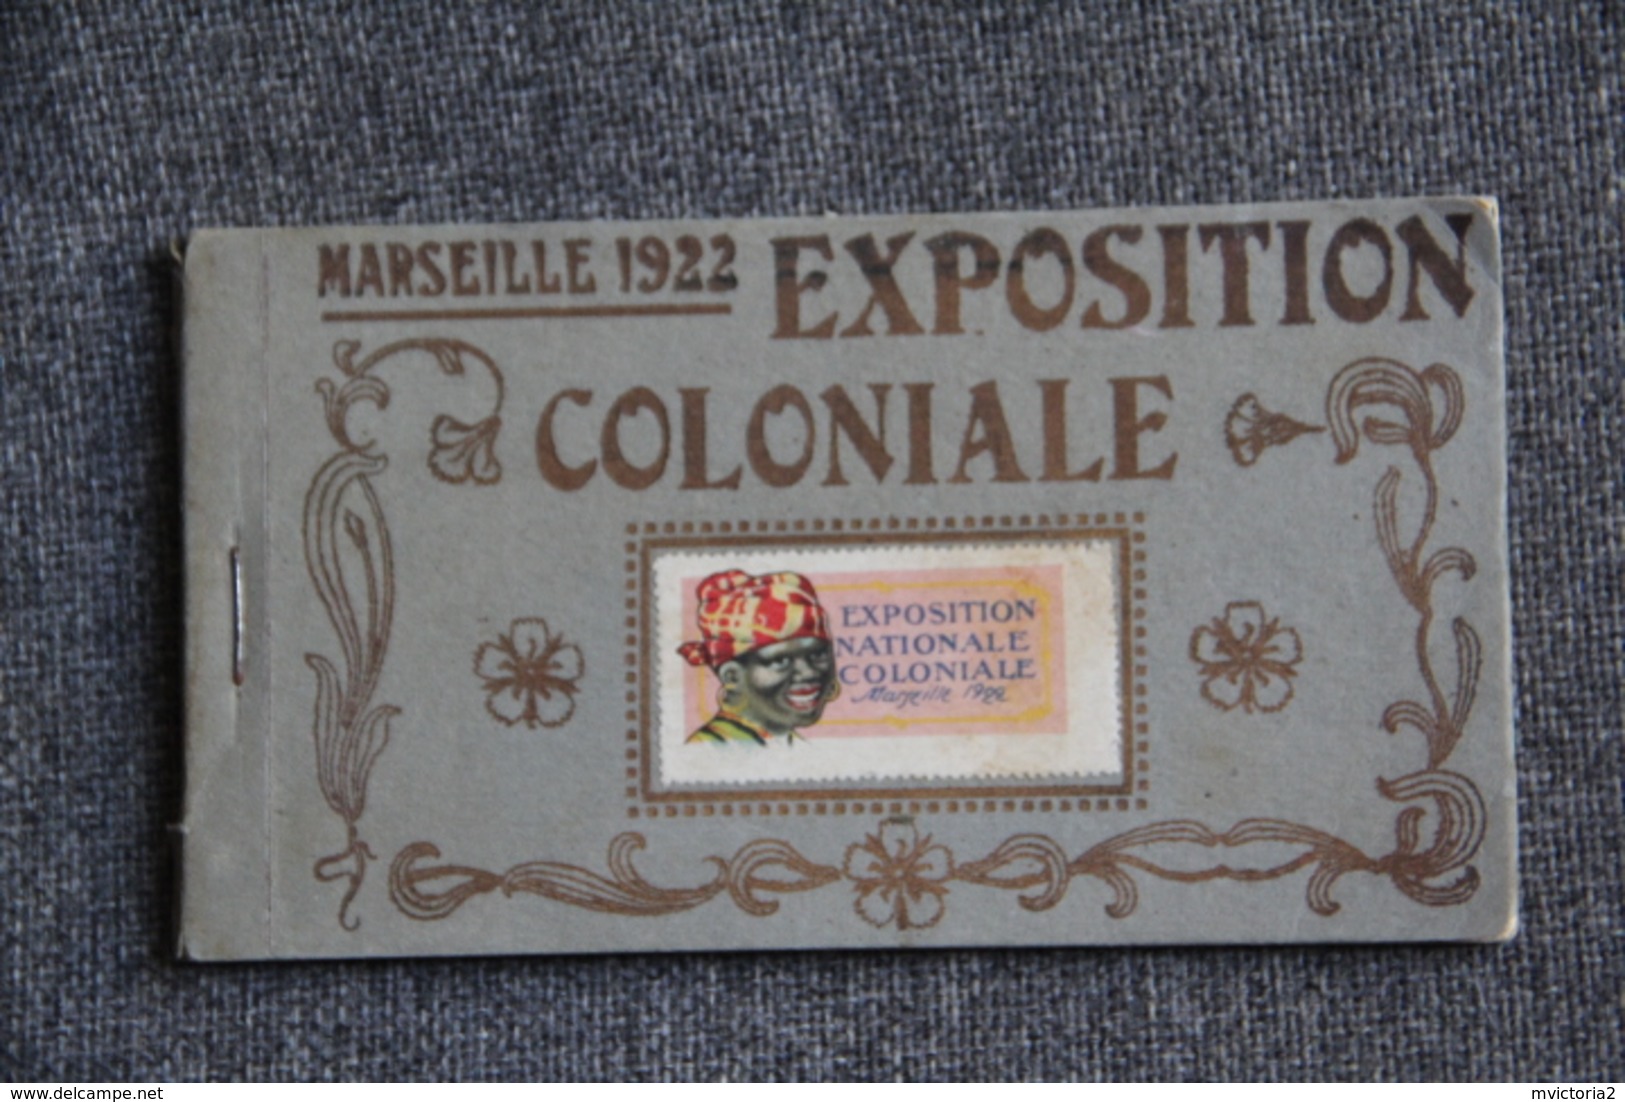 MARSEILLE - Carnet Complet De L'Exposition Coloniale De 1922 .Toutes Les Cpa Pas Photographiées.... - Expositions Coloniales 1906 - 1922